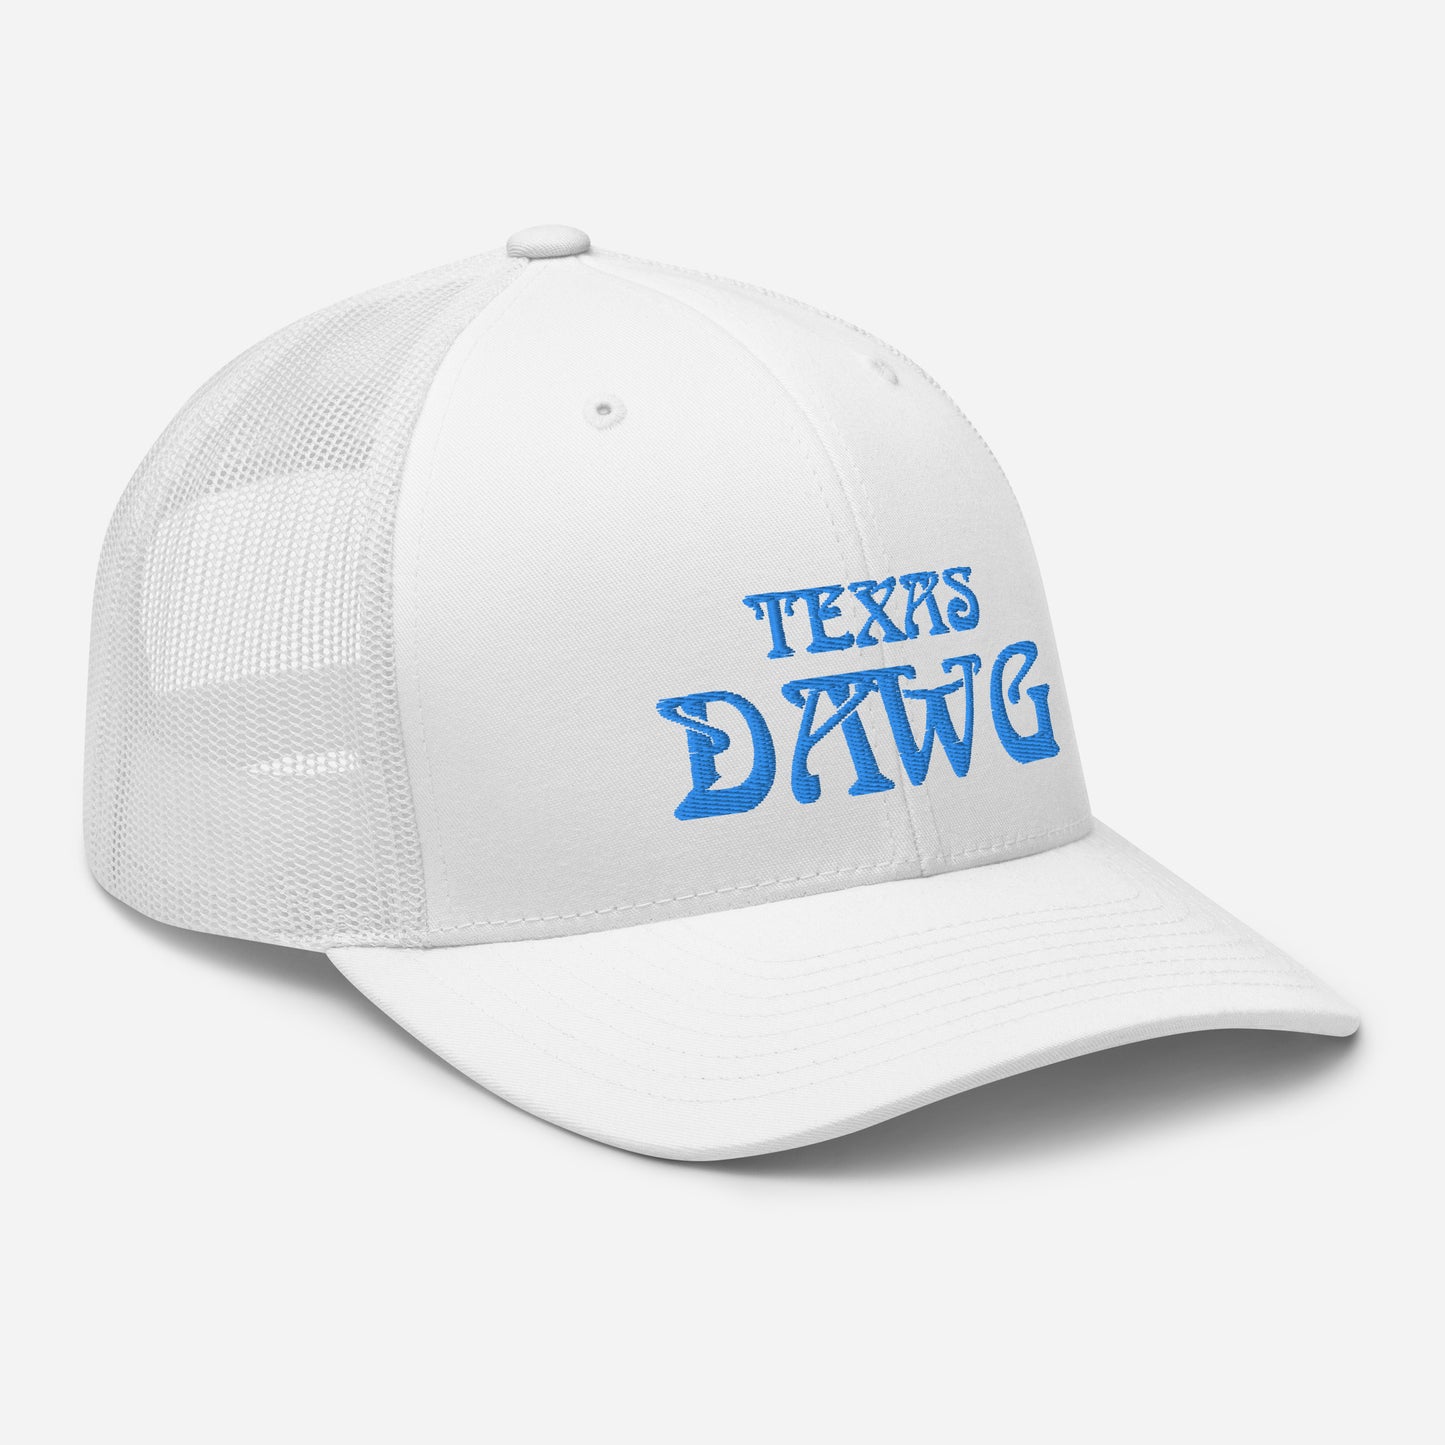 Blue Texas Dawg Funny Trucker Cap